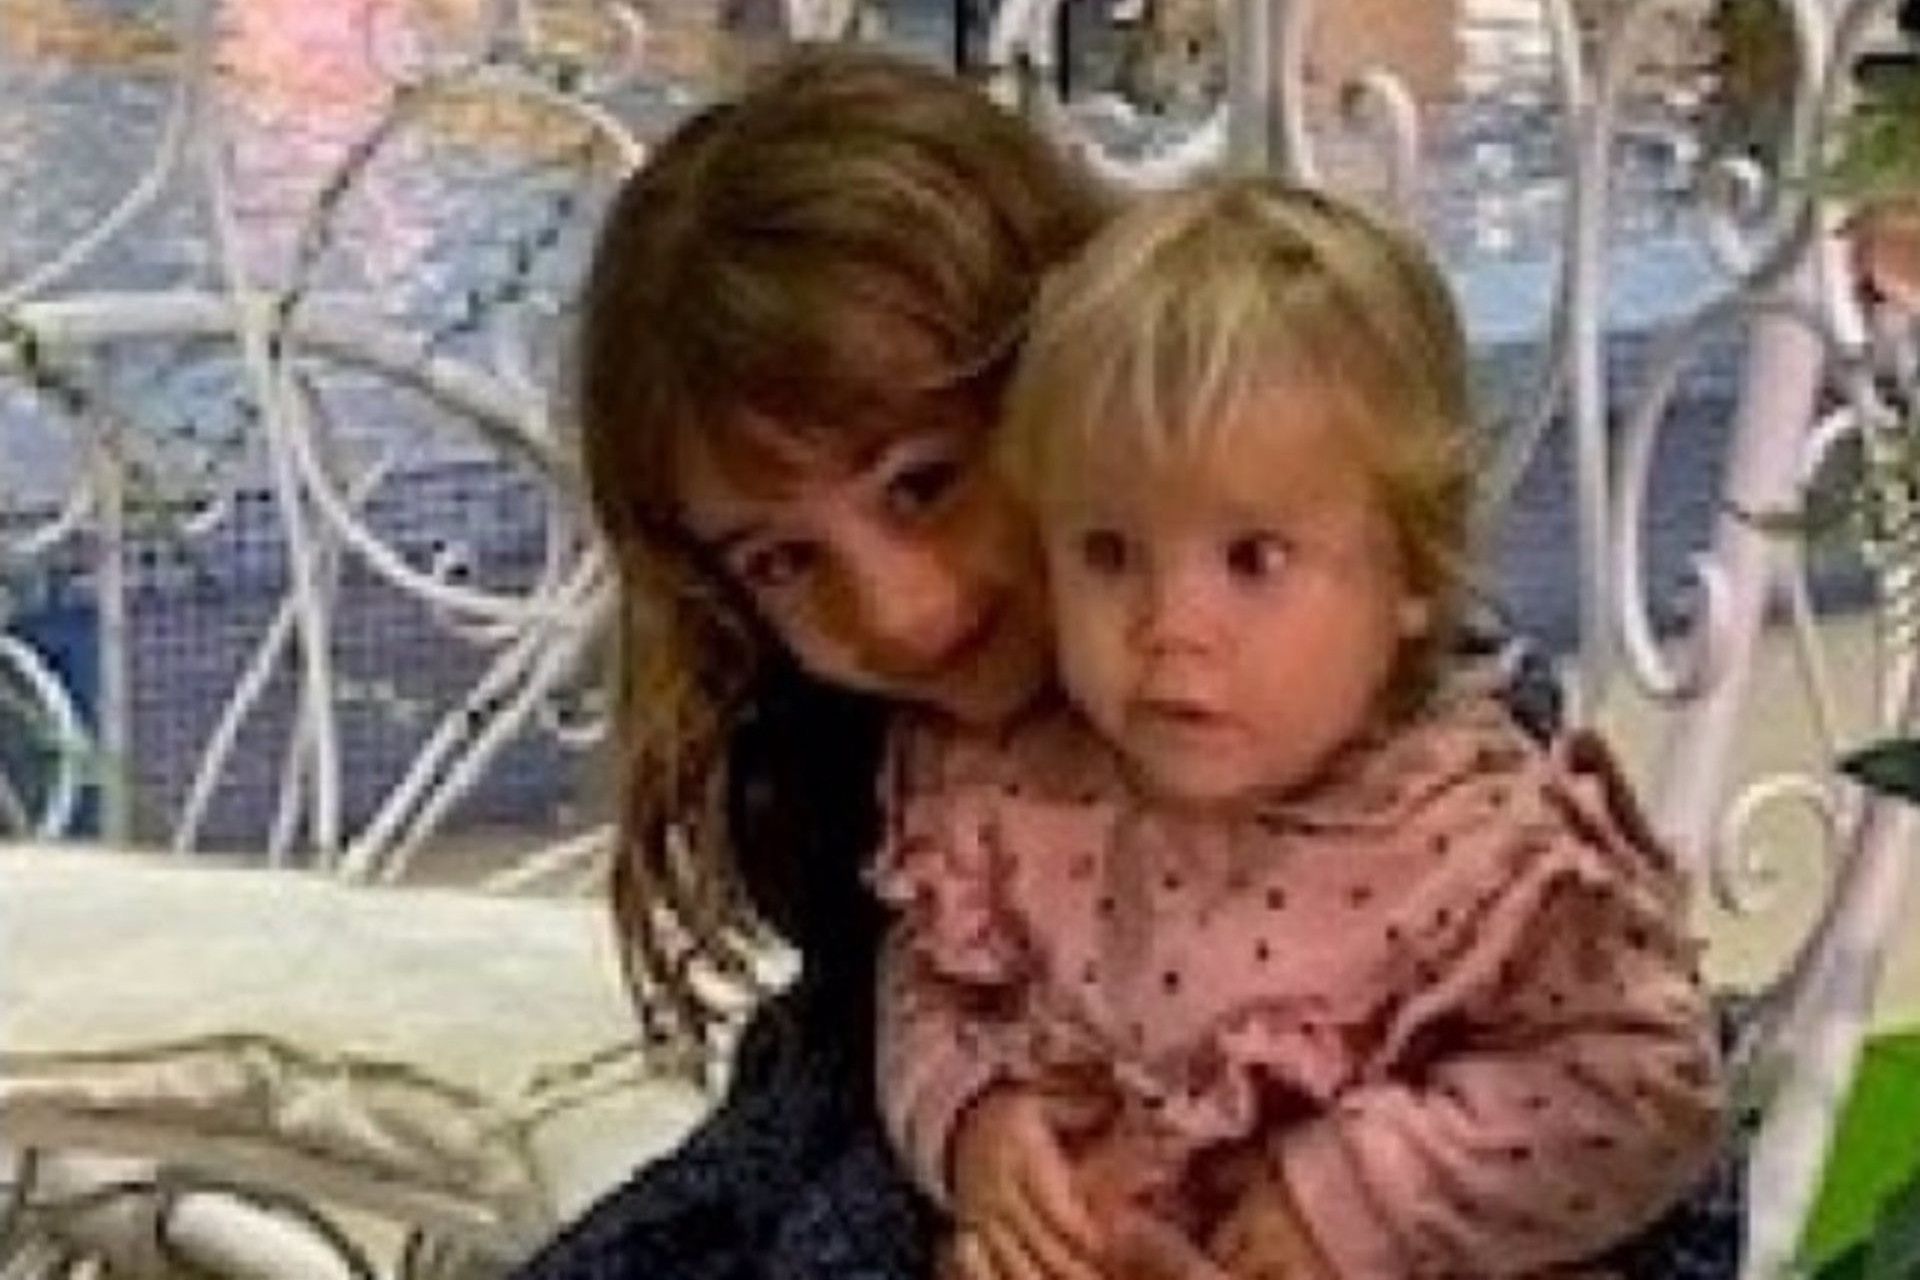 Las dos niñas, en una imagen difundida públicamente por la familia y la asociación SOSDesaparecido.